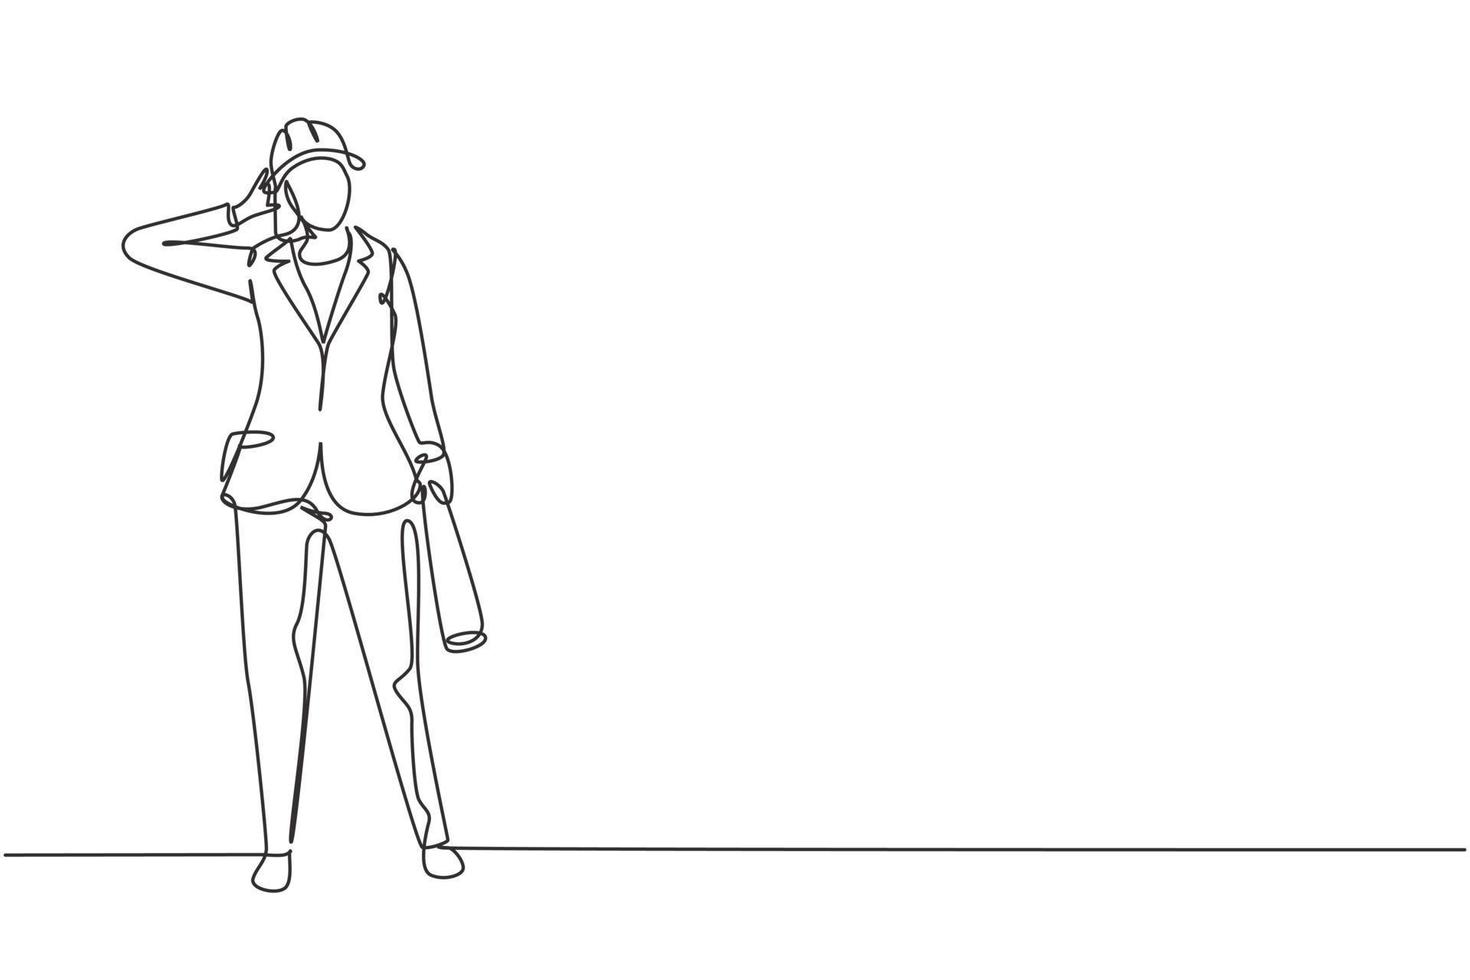 desenho de linha contínua única arquiteta feminina ficou com o gesto "me chame" e usando um capacete carregando a planta do plano de trabalho do edifício. ilustração em vetor desenho gráfico dinâmica de uma linha